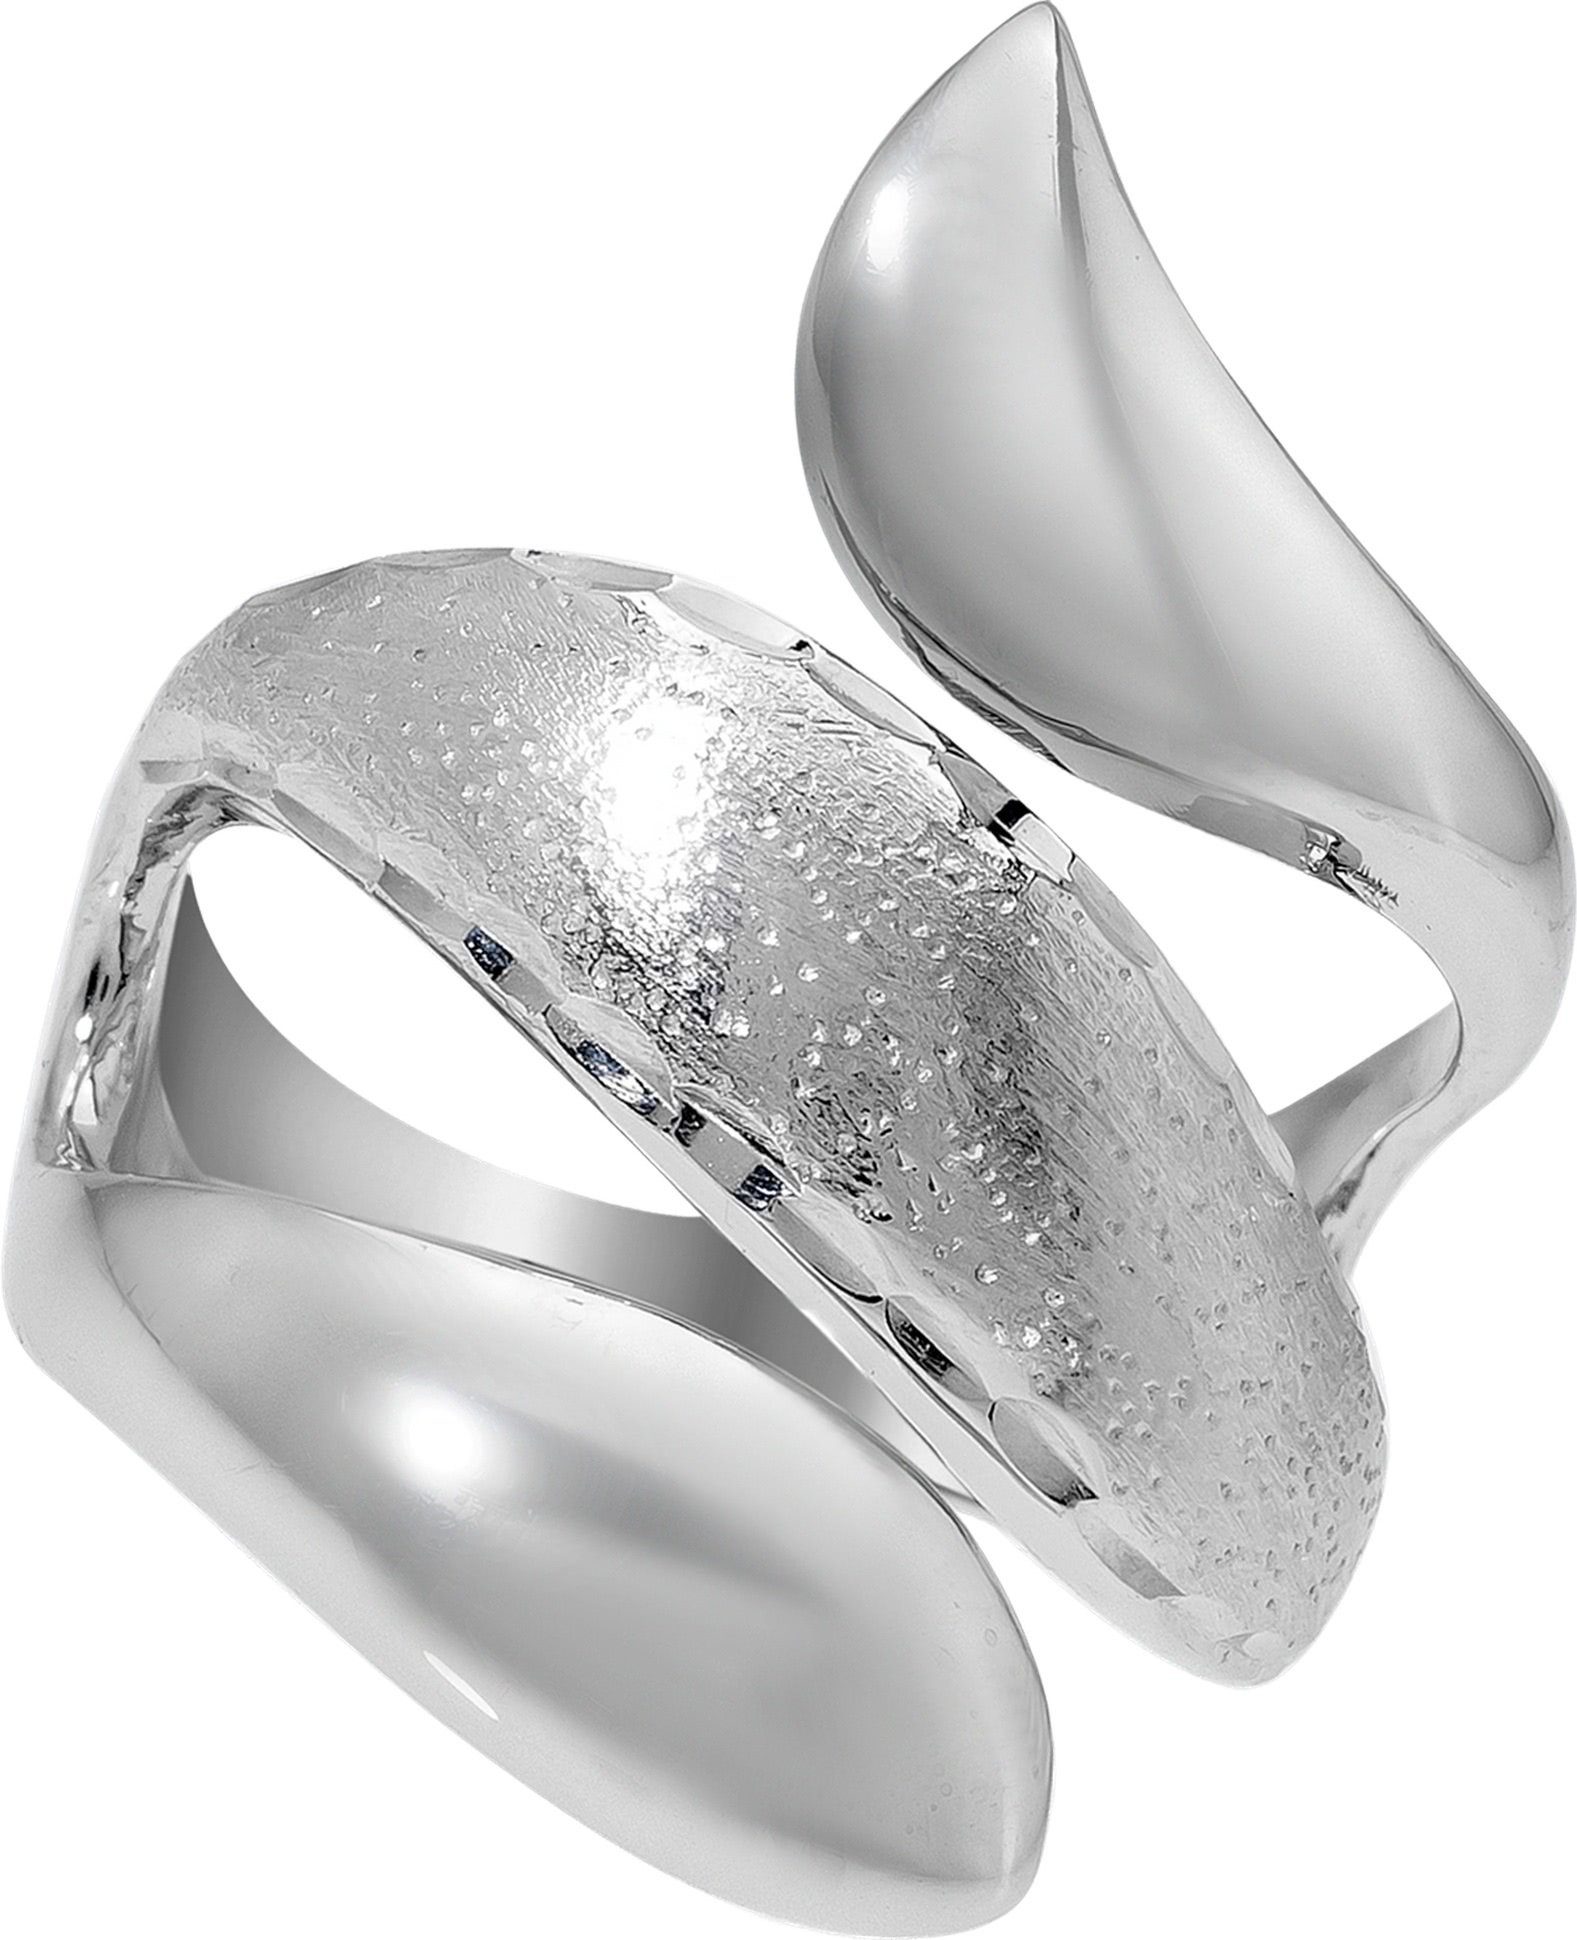 Nach und nach treffen neue Produkte ein! Balia Silberring Balia Ring (Fingerring), Damen (Schlange) Größe 52 Fingerring 925 Silber für (16,6), Sterling Silber 925 mit diamantierter